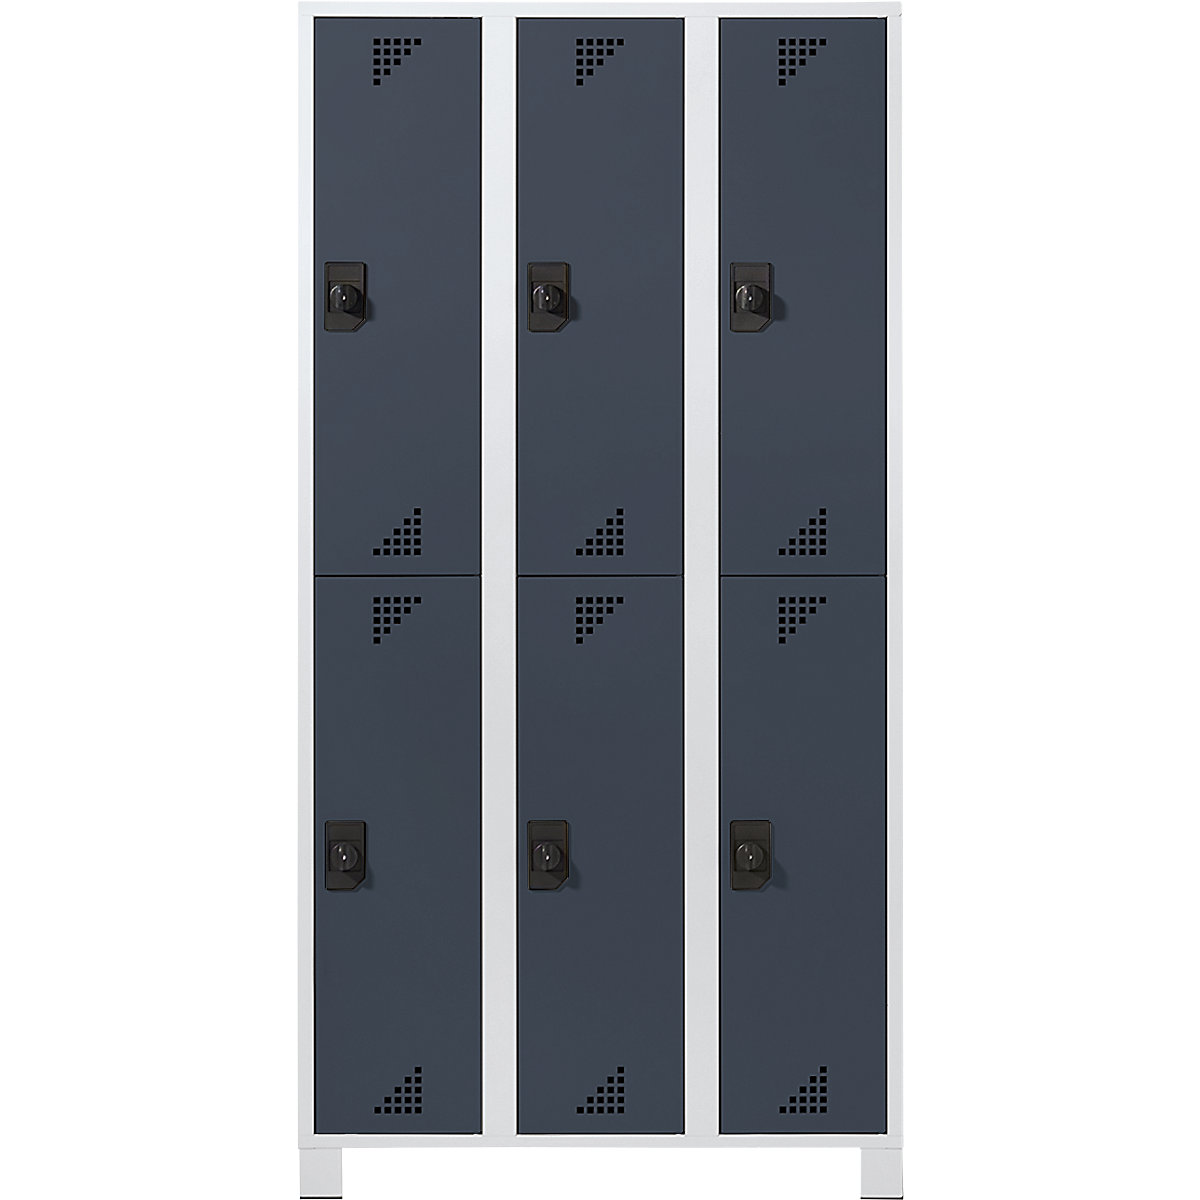 Šatní skříň s oddíly v poloviční výšce – eurokraft pro, v x š x h 1800 x 900 x 500 mm, 6 oddílů, korpus světle šedý, dveře antracitově šedé